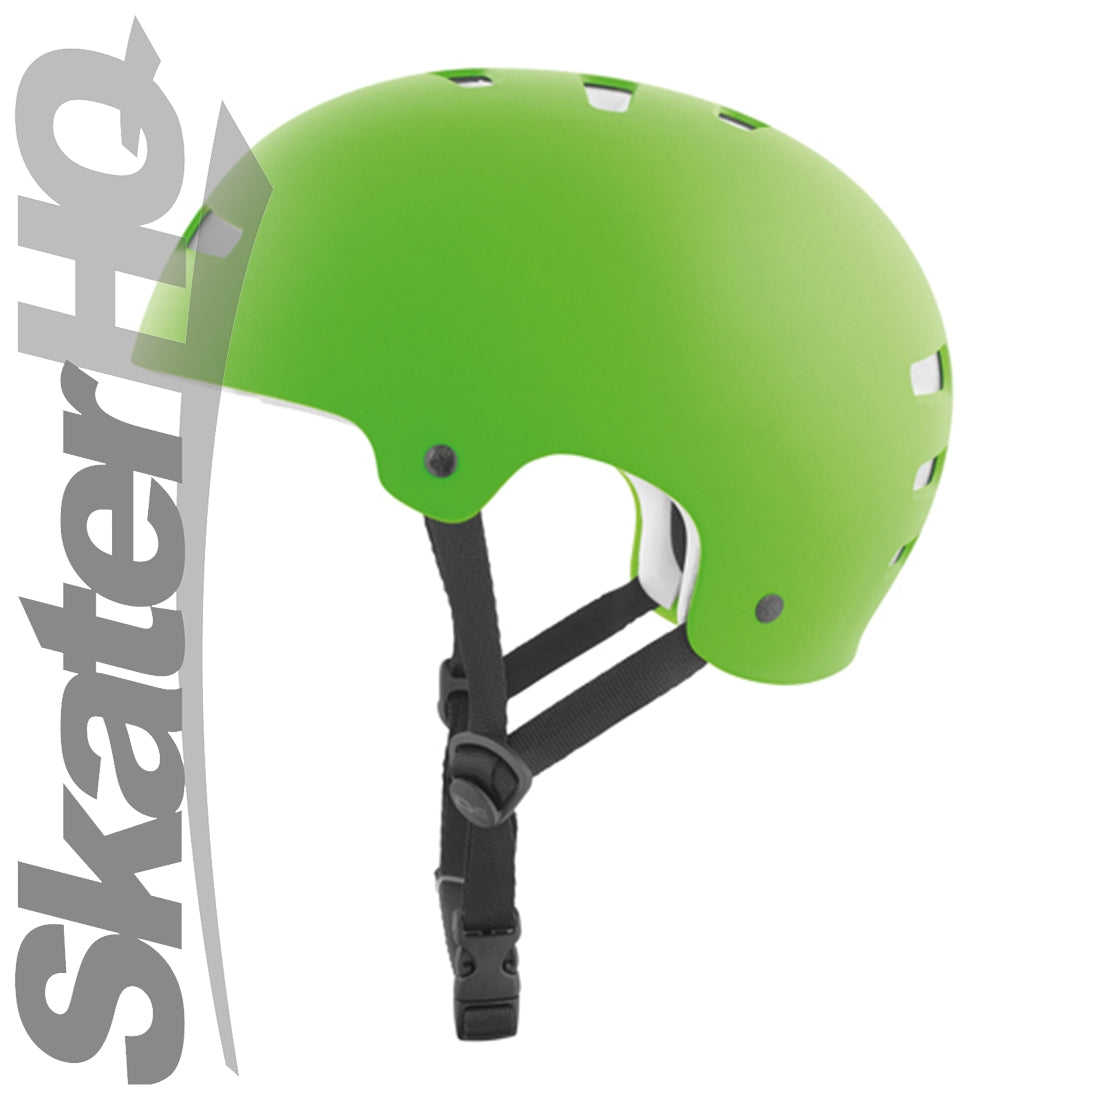 TSG Kraken Flat Lime S/M Helmets